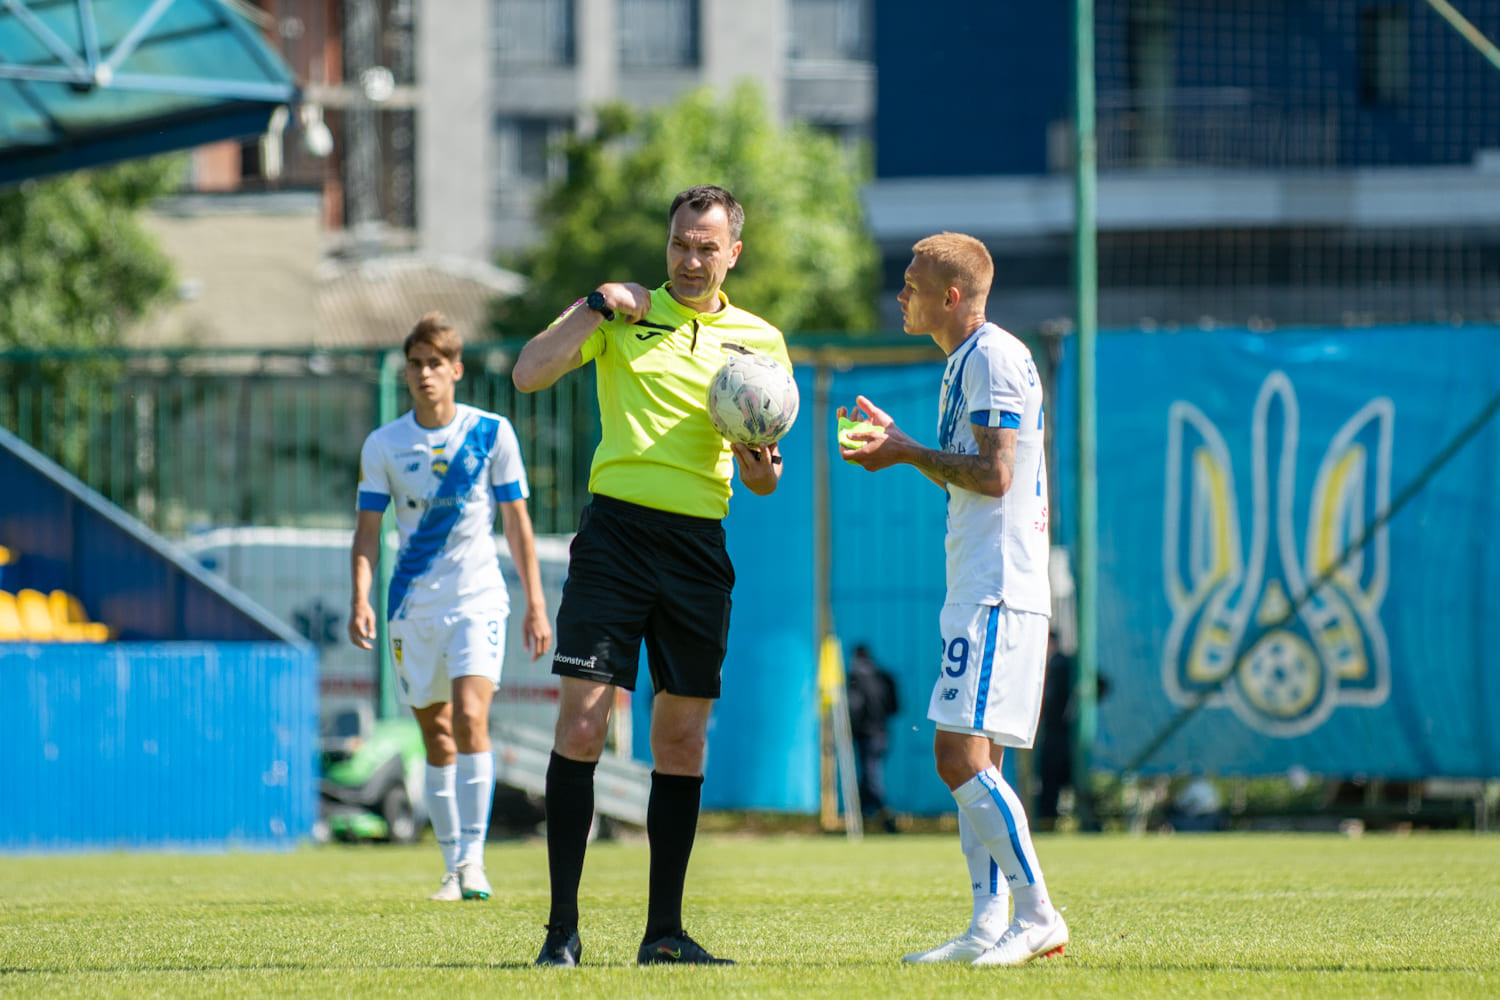 Maxym Kozyriatskyi – Dynamo vs Mynai referee